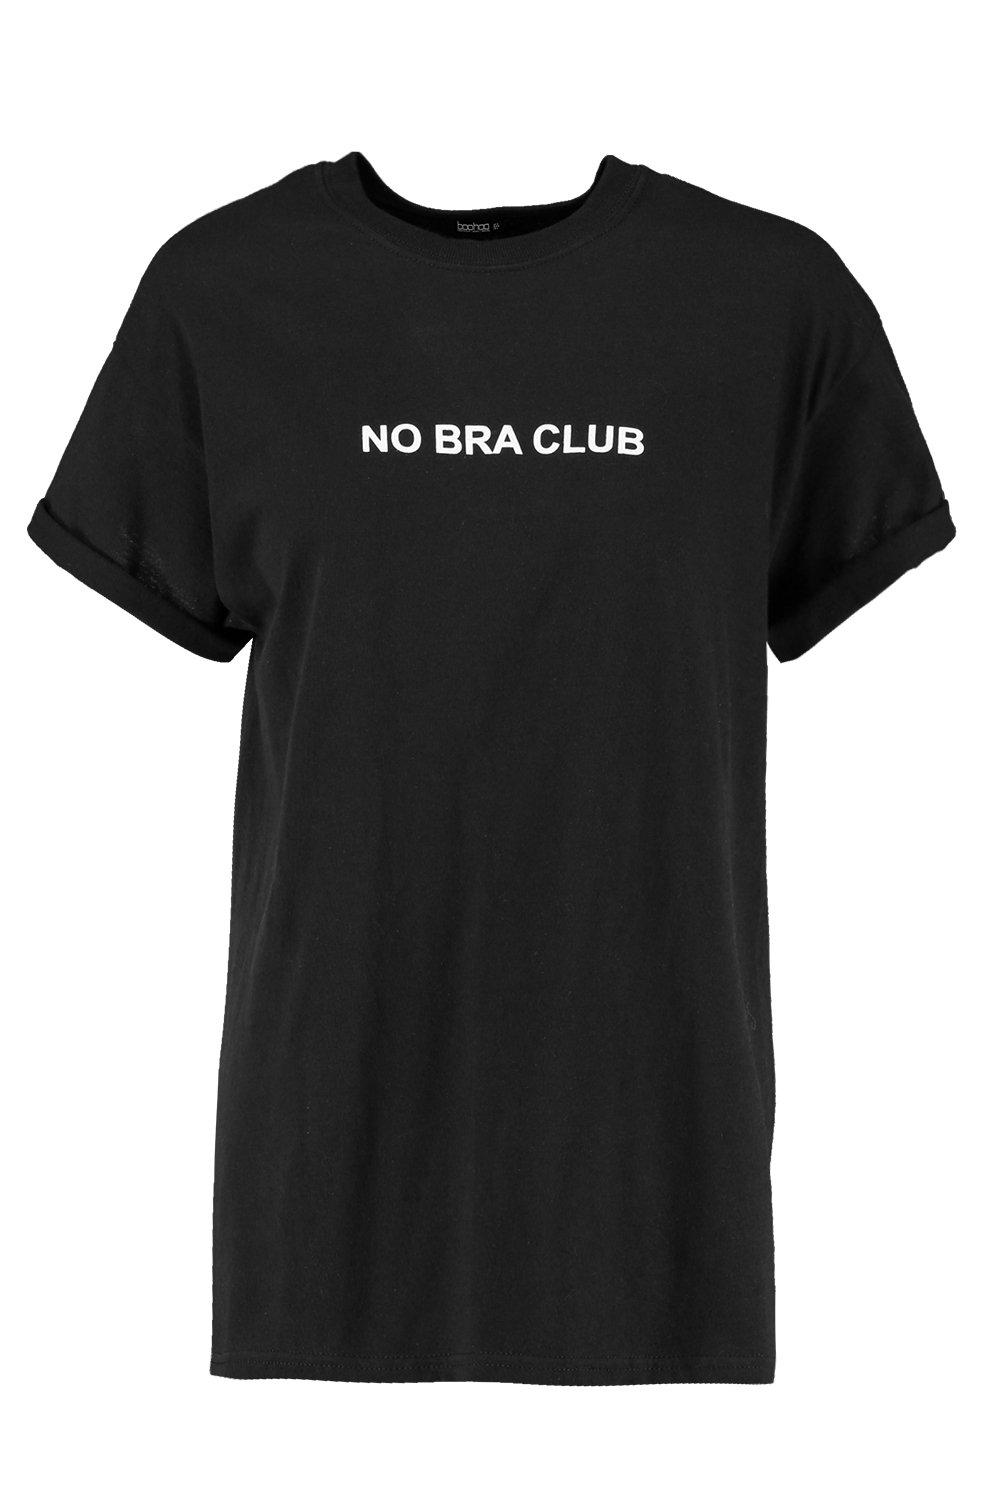 no bra club boohoo